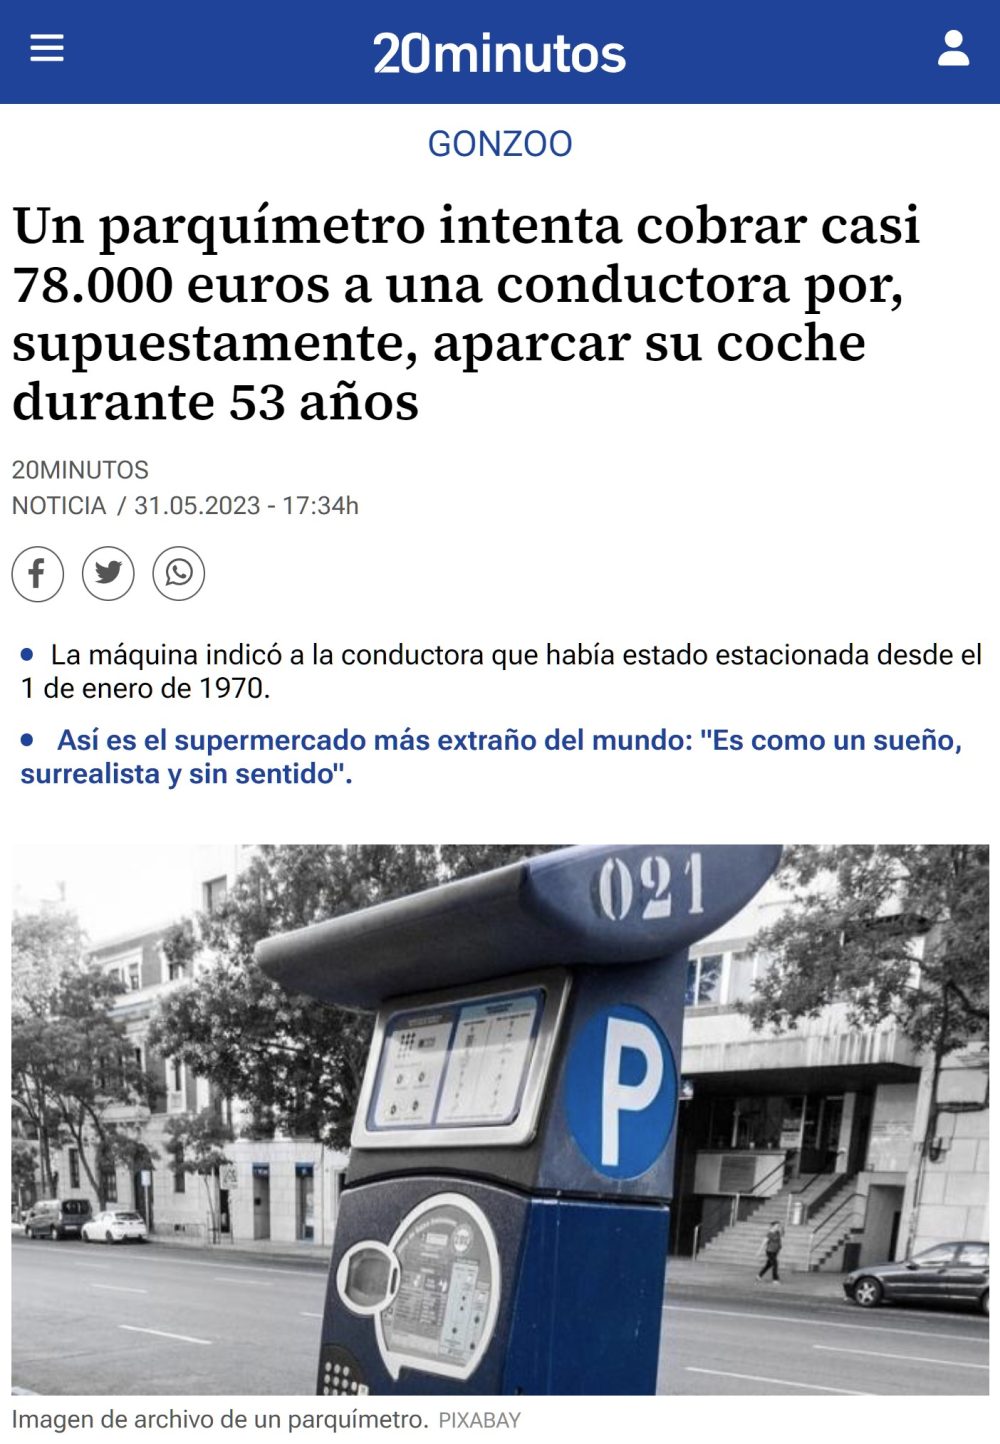 Maldita inflación: Un parquímetro le pide a una mujer que pague 77956€ por aparcar el coche durante 1 hora.